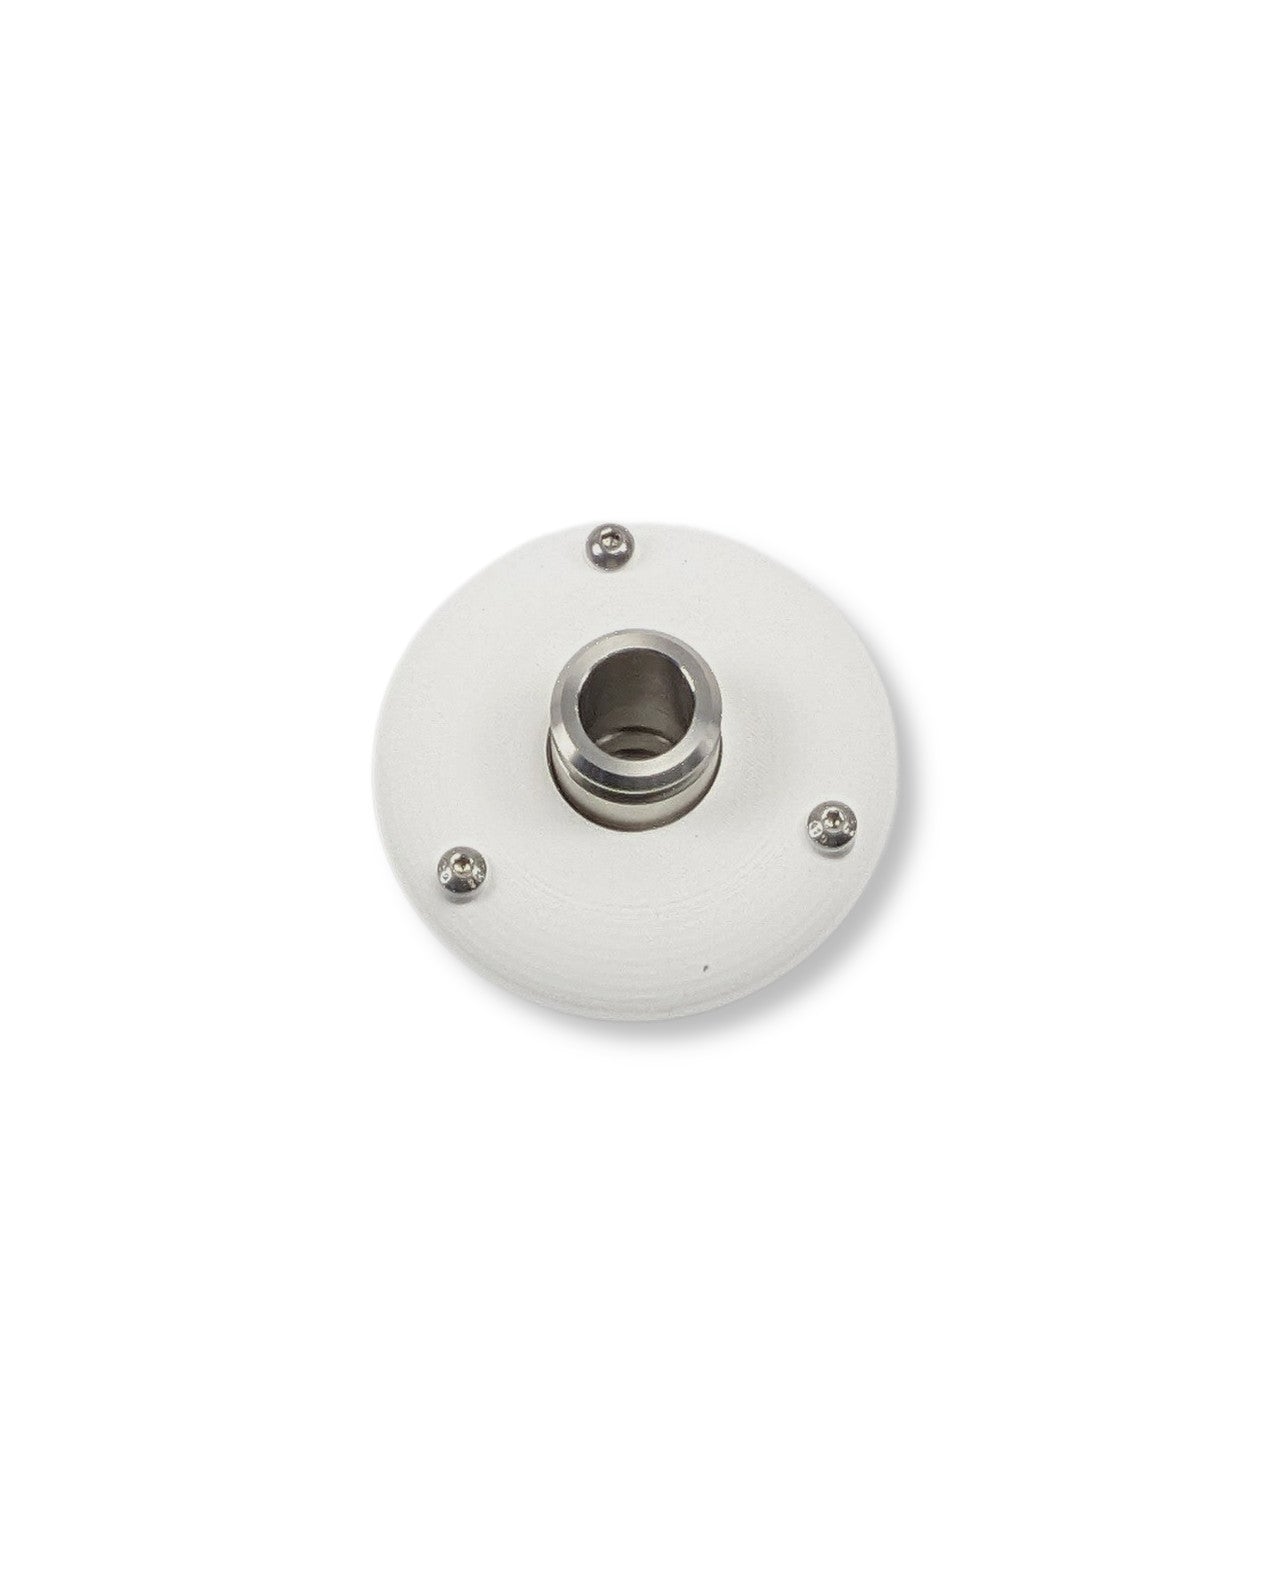 Ein weißer runder Knopf auf einer weißen Oberfläche für PURION IBC Universal 48W SPL BS von UV Concept GmbH zur Vermeidung von Verkeimungen.